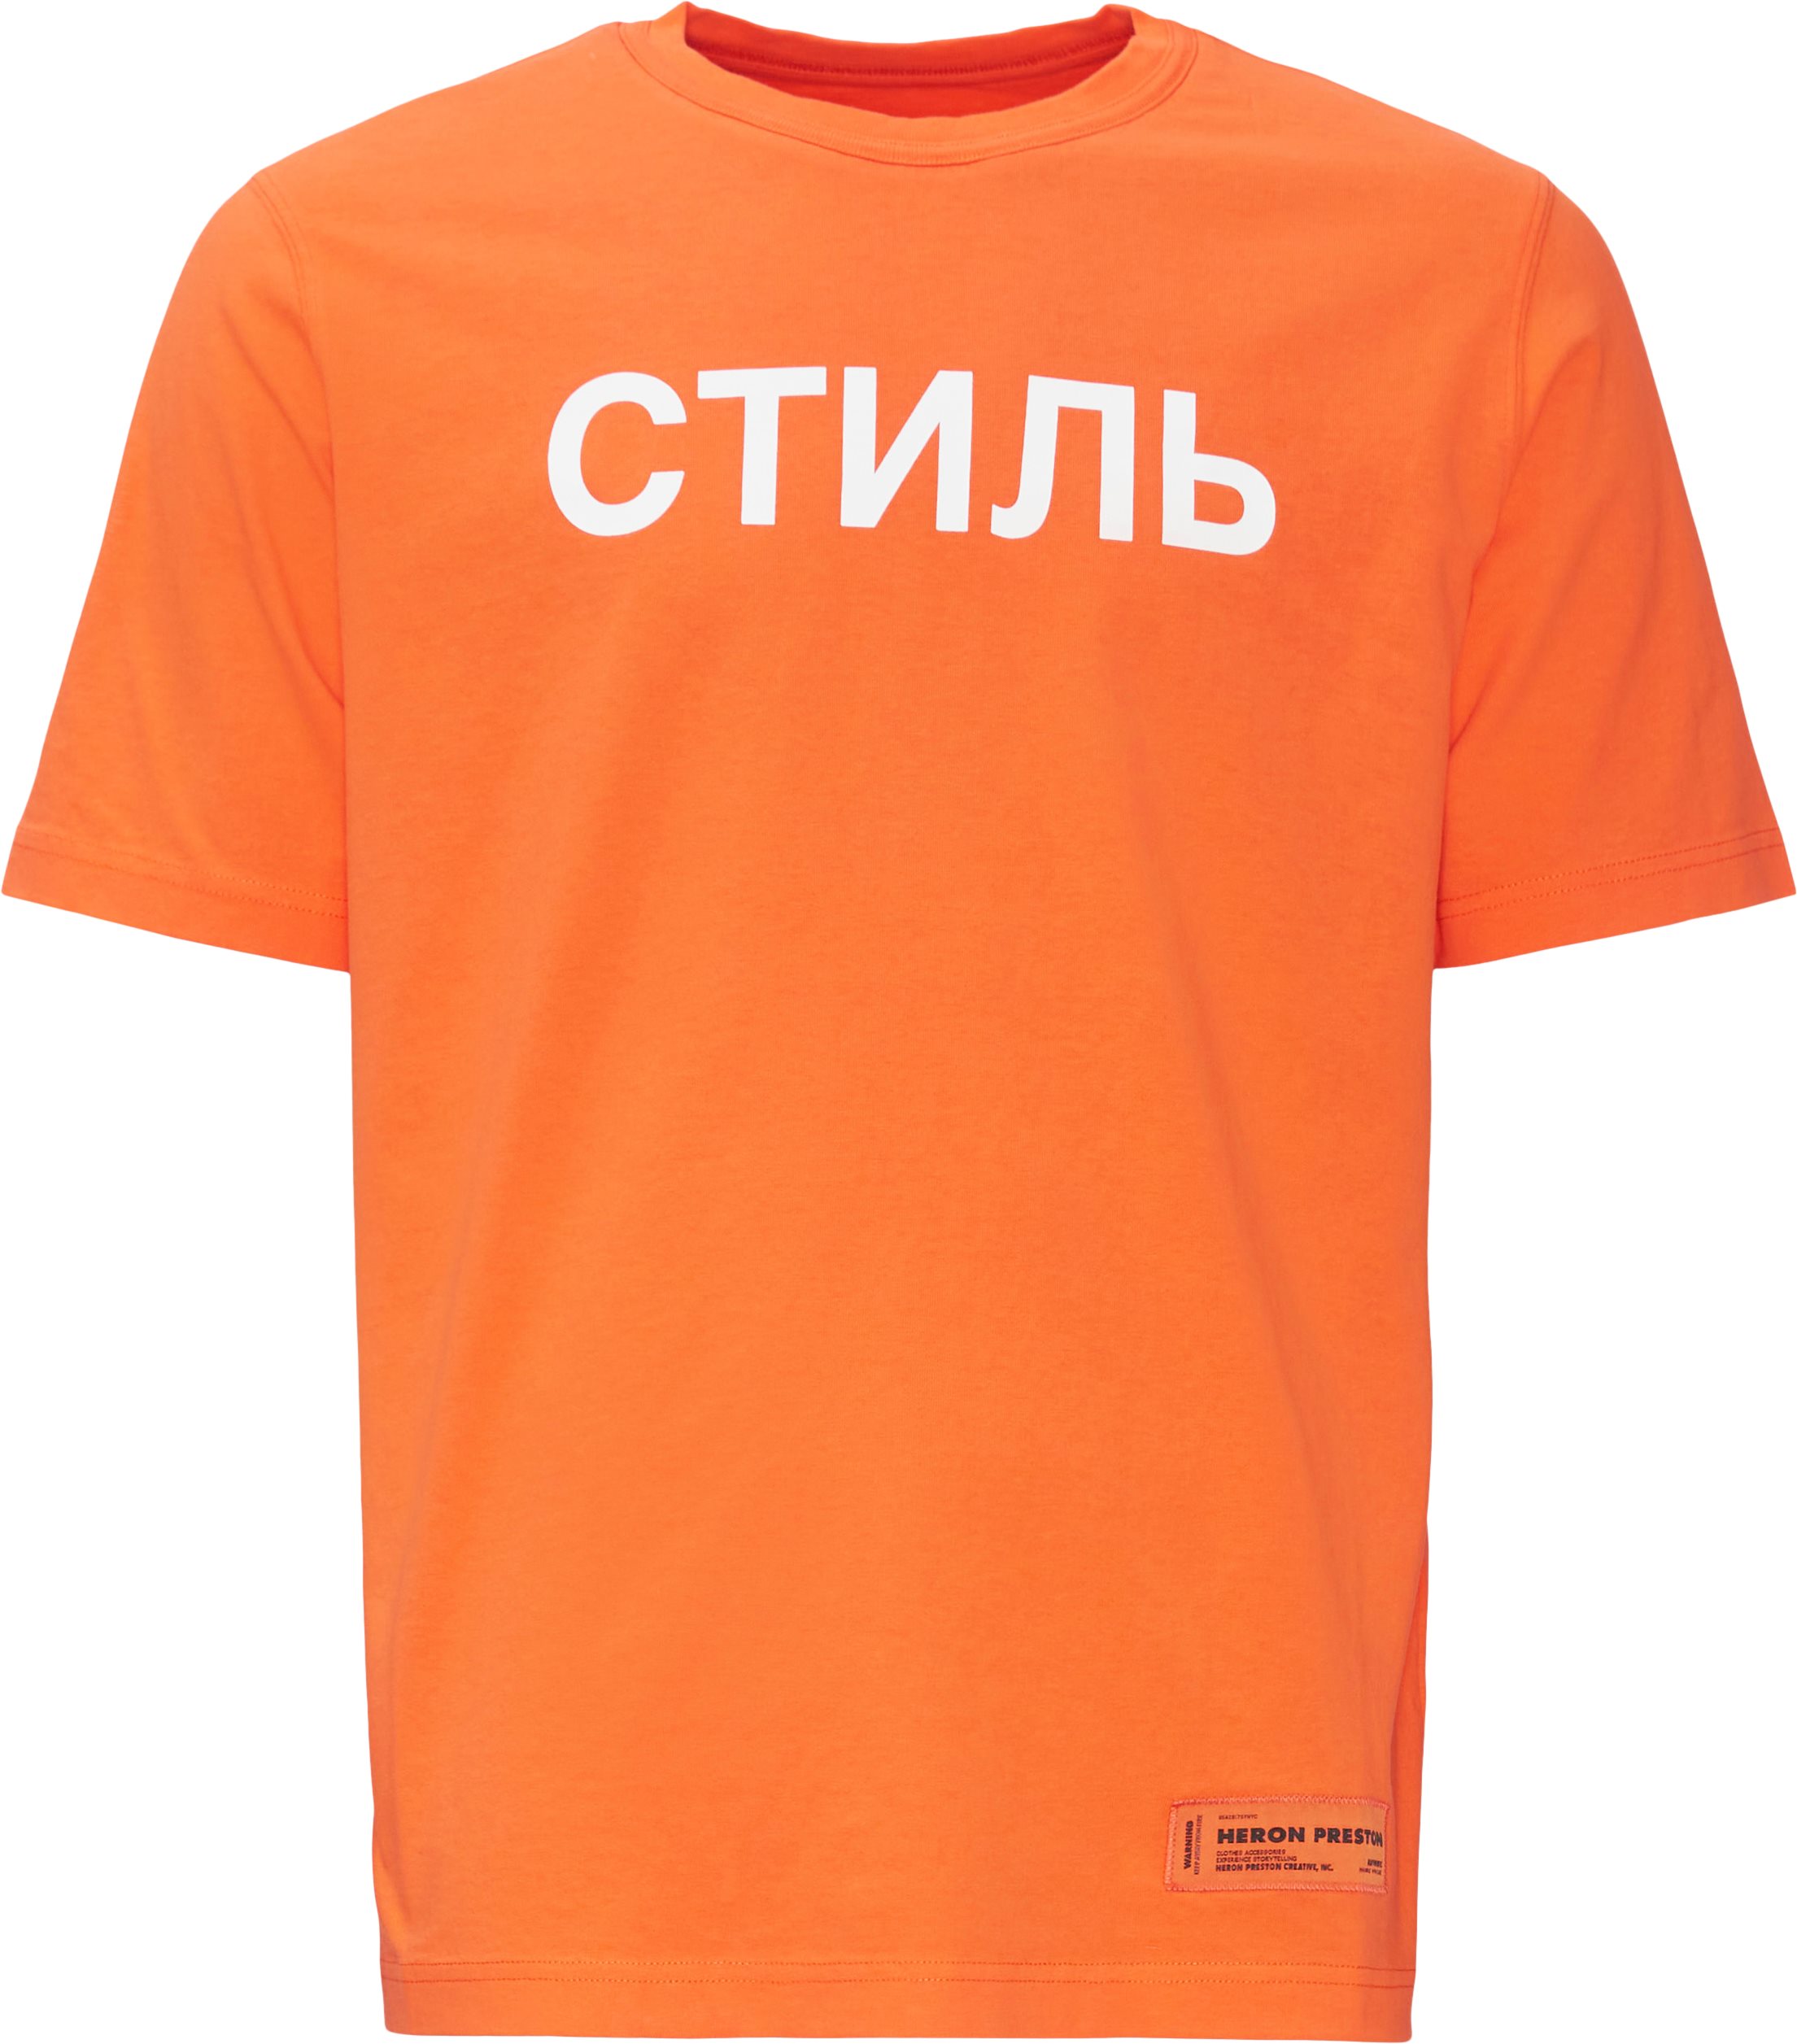 Logo Tee - T-shirts - Regular fit - Orange